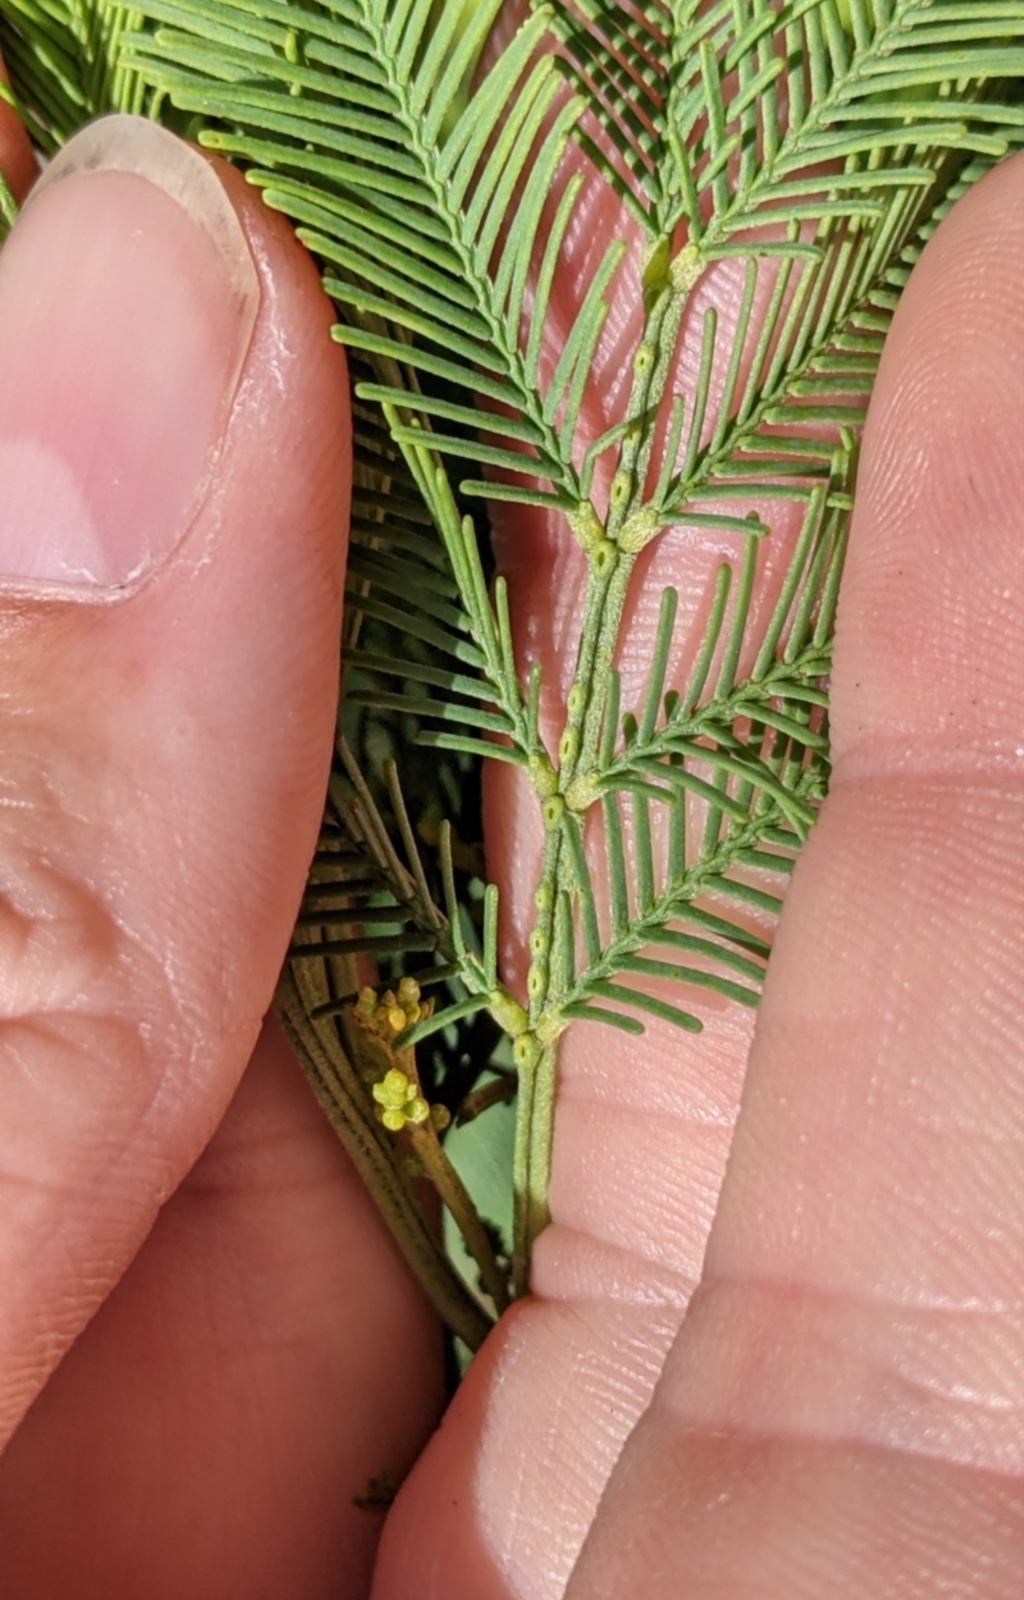 Acacia deanei subsp. paucijuga at Terrick Terrick, VIC - 23 Oct 2021